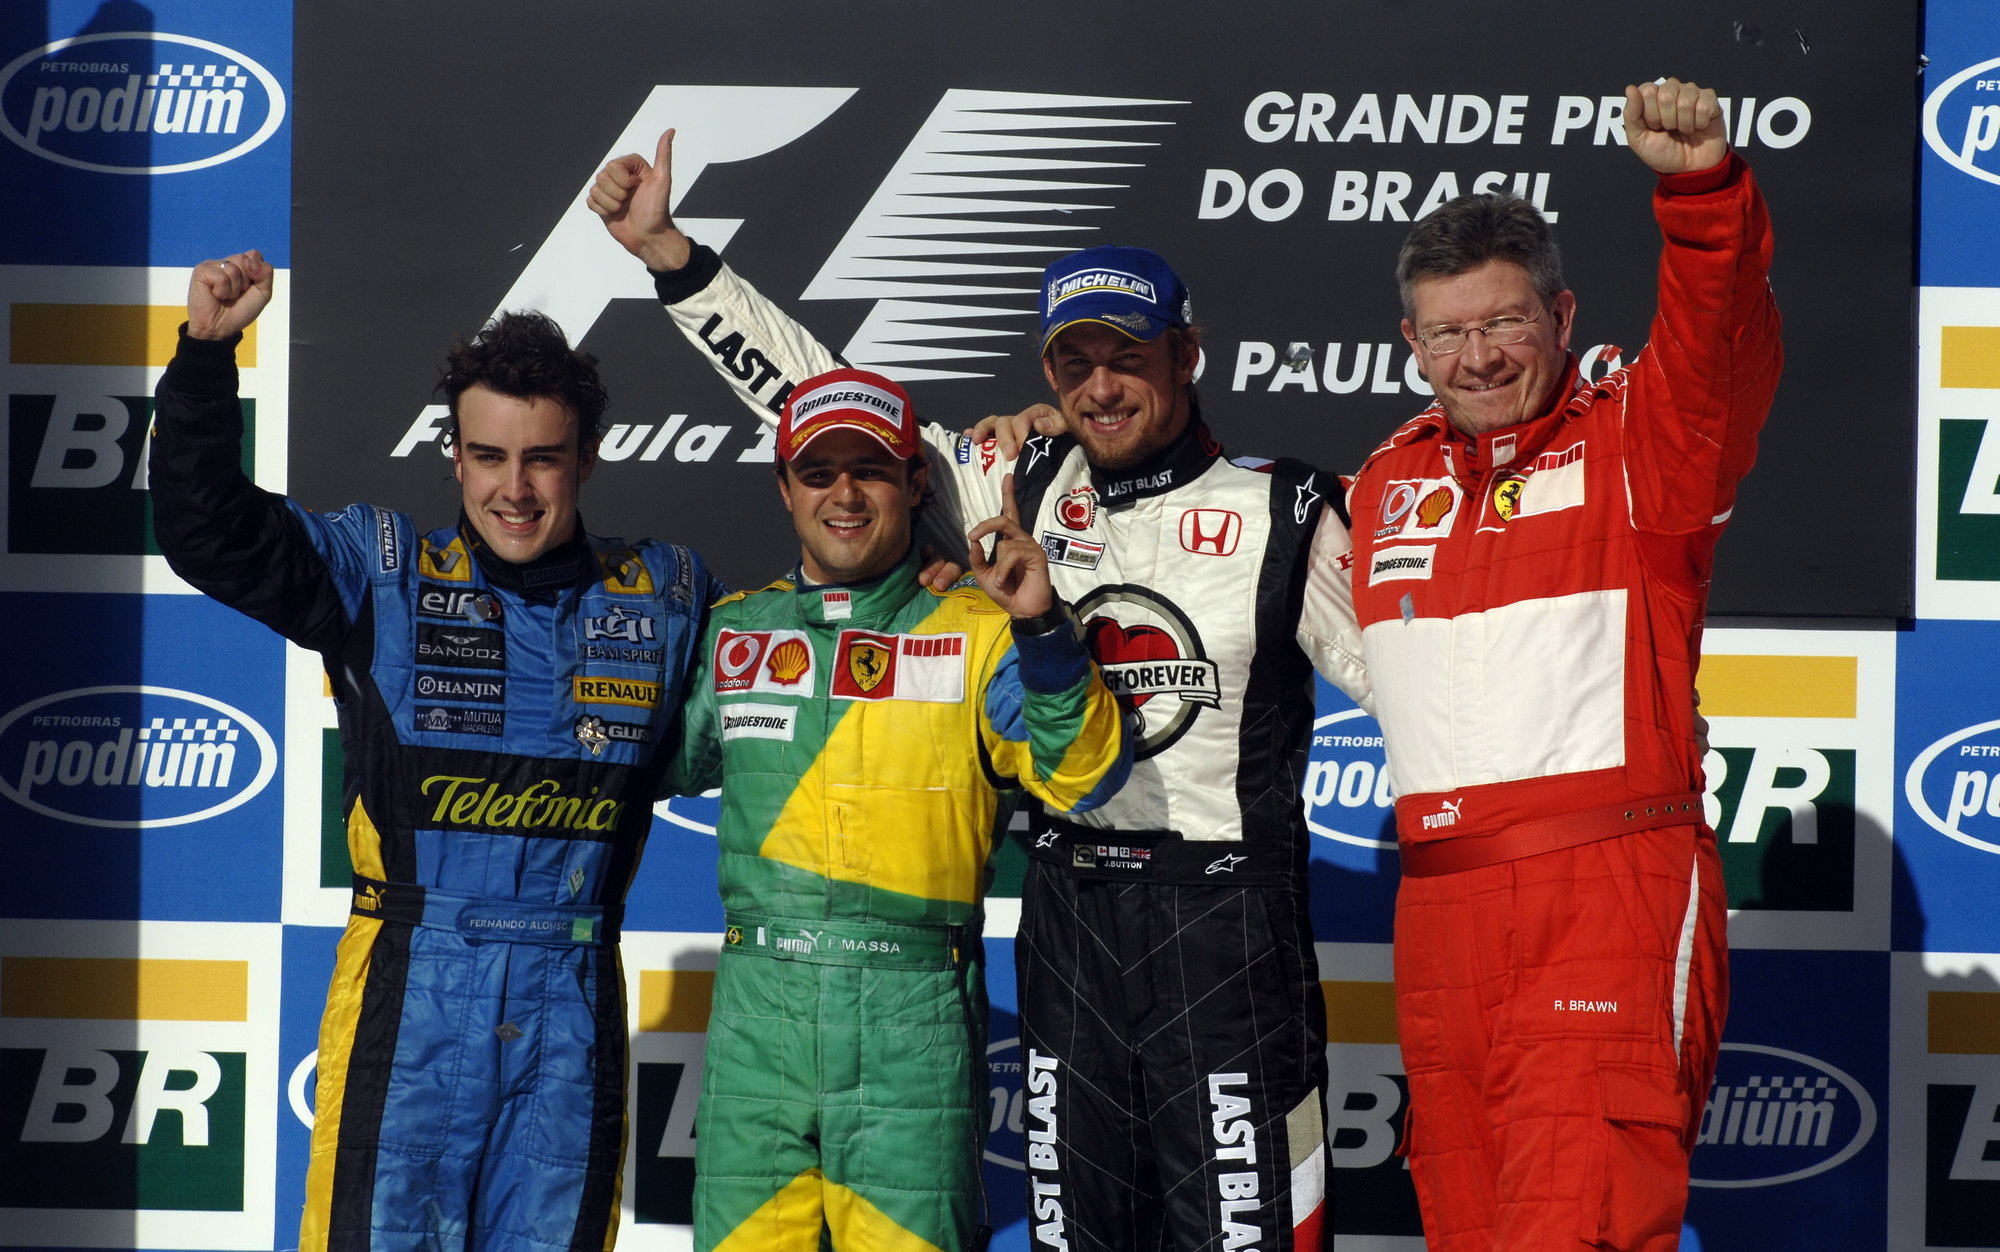 Radost na pódiu po Velké ceně Brazílie 2006 s Felipem Massou, Fernandem Alonsem a Jensonem Buttonem